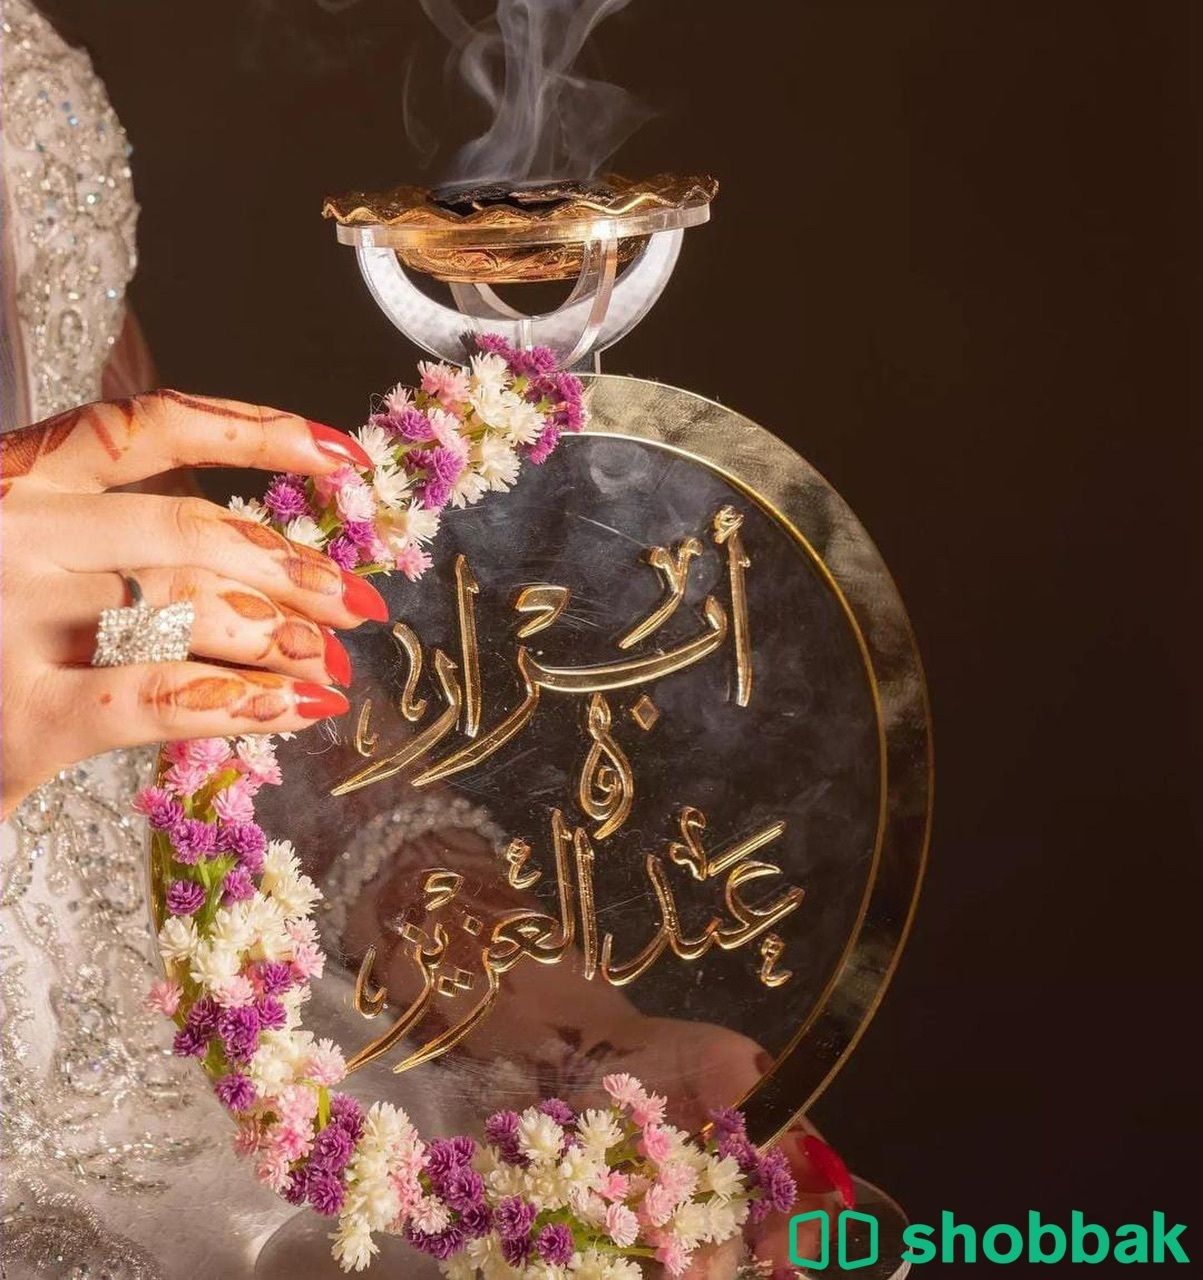 مباخر اكريلك ملكية مزينة بالورد بالاسم  Shobbak Saudi Arabia